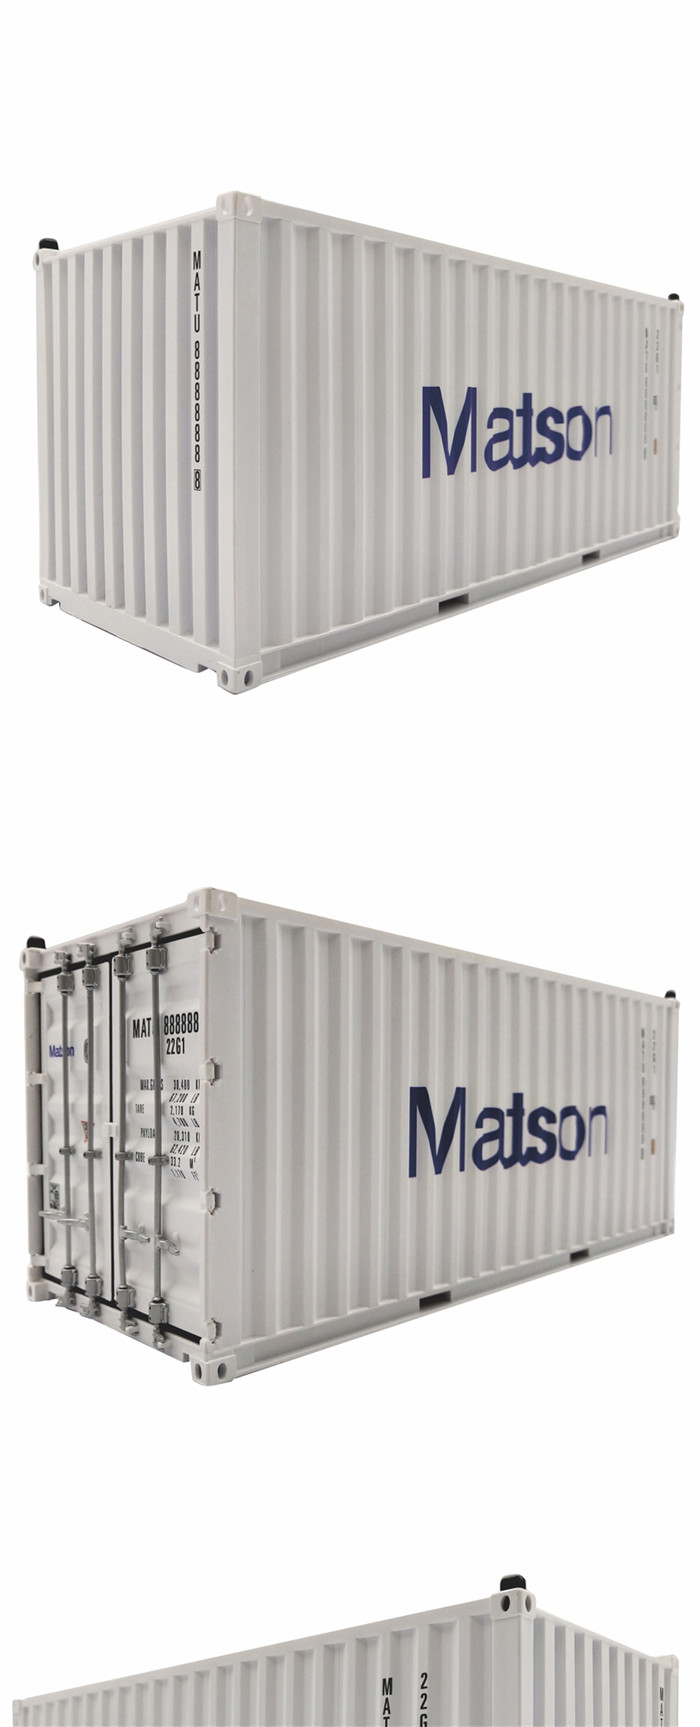 货运集装箱模型logo定制,主要产品有one集装箱模型,马士基集装箱模型